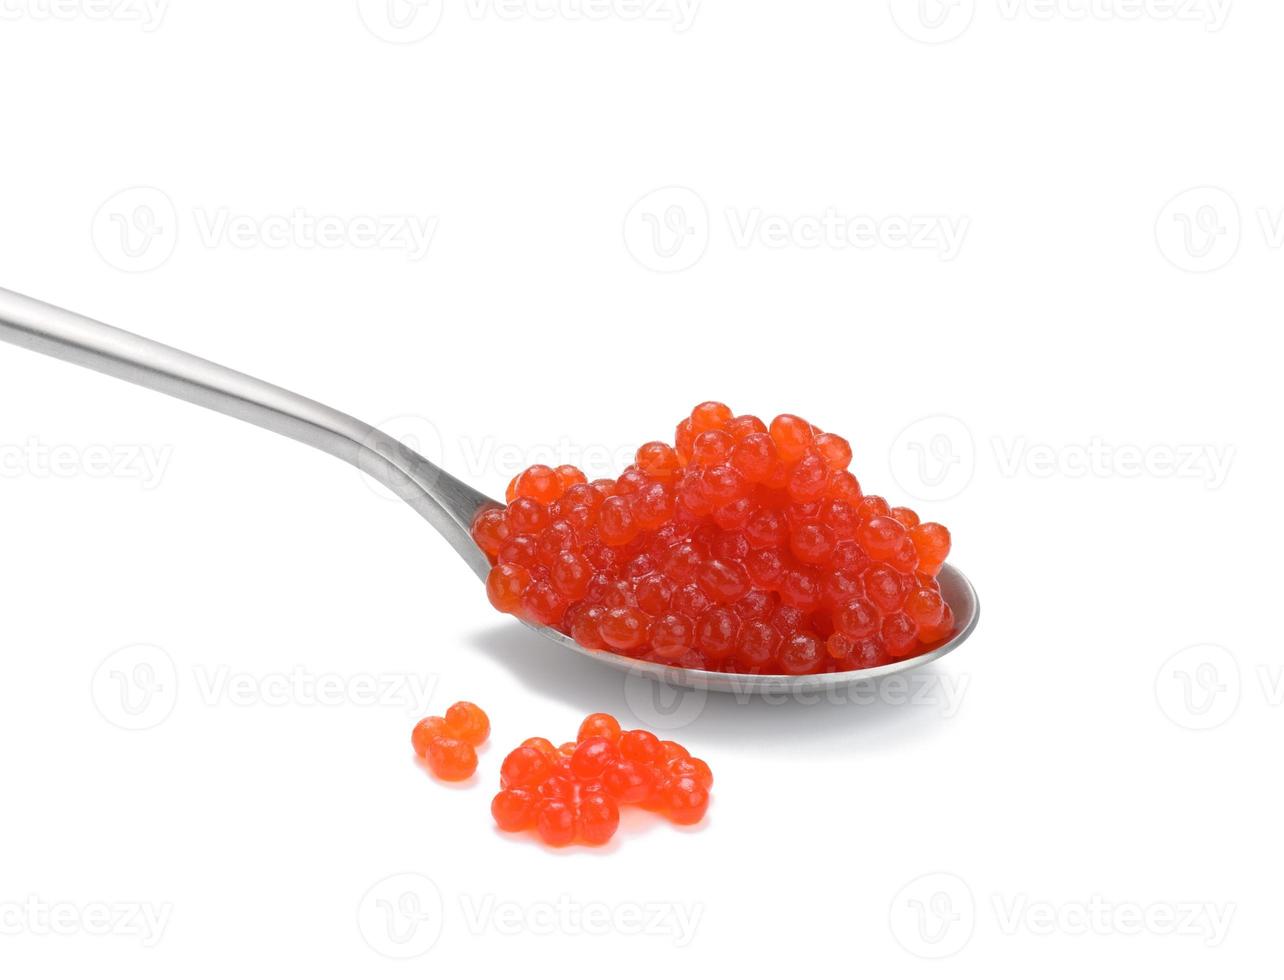 Caviar de saumon kéta rouge à grain frais en cuillère métallique, fond blanc photo